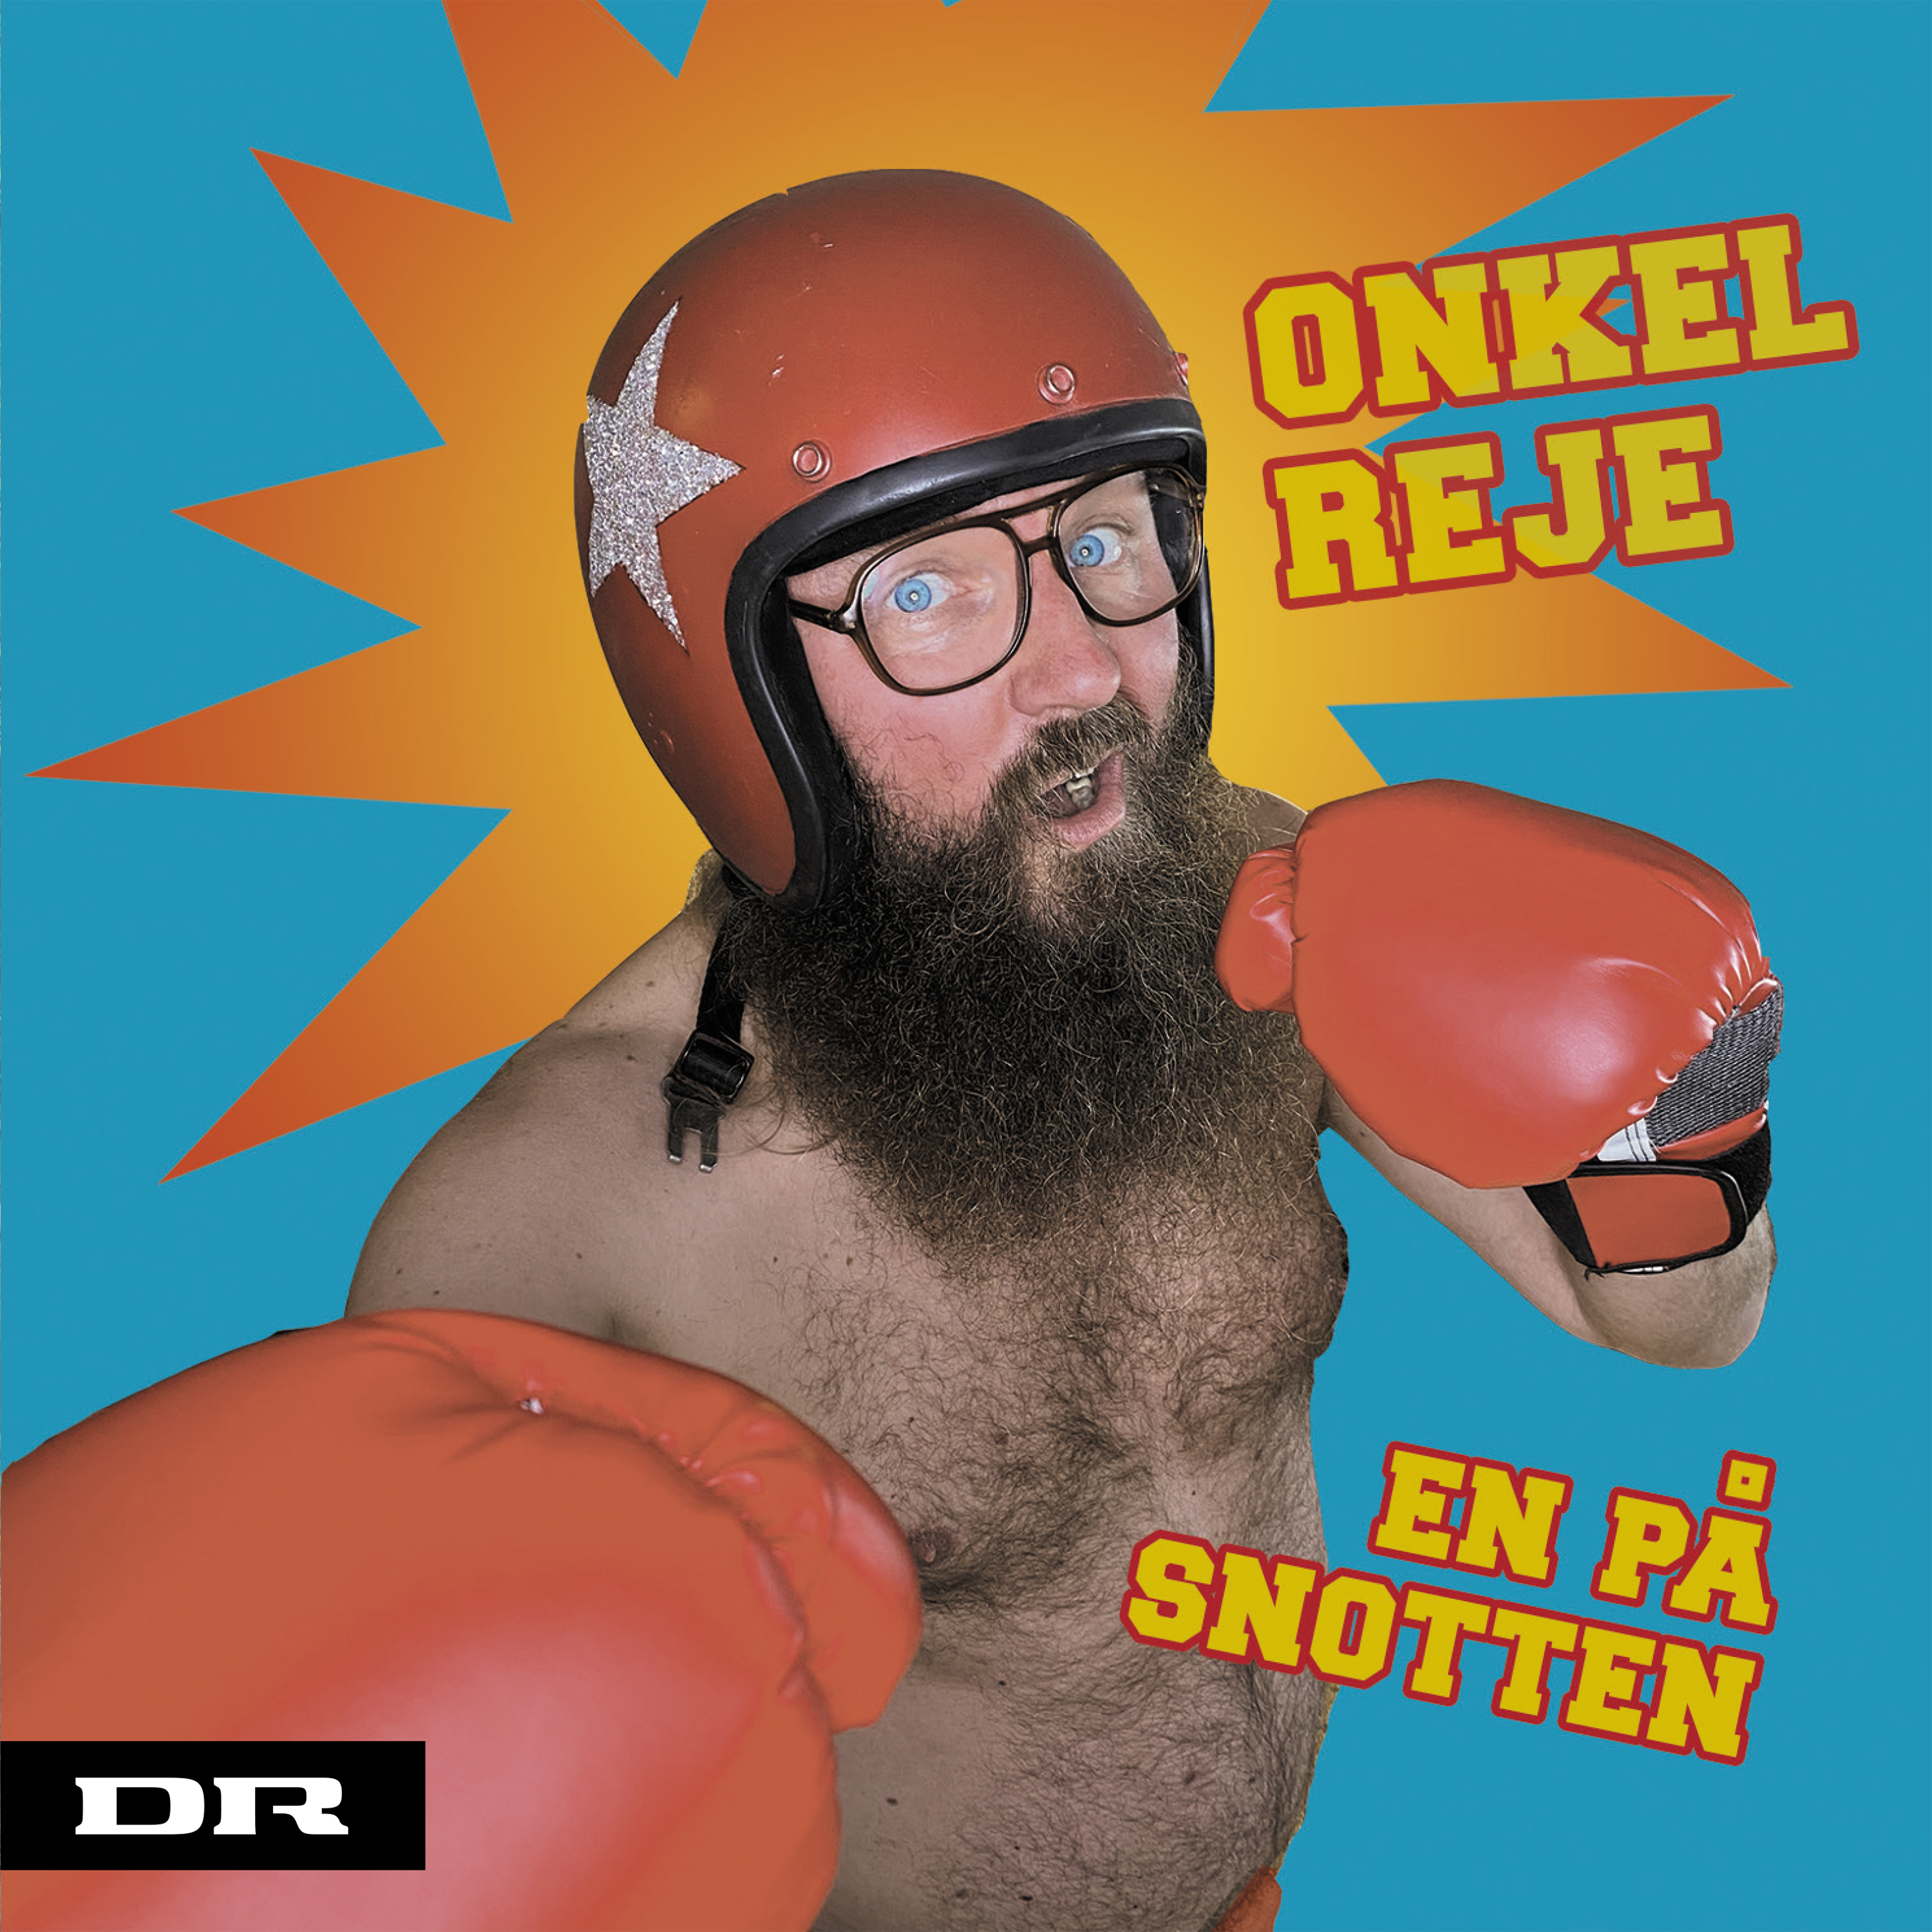 Onkel Reje - En på snotten - CD